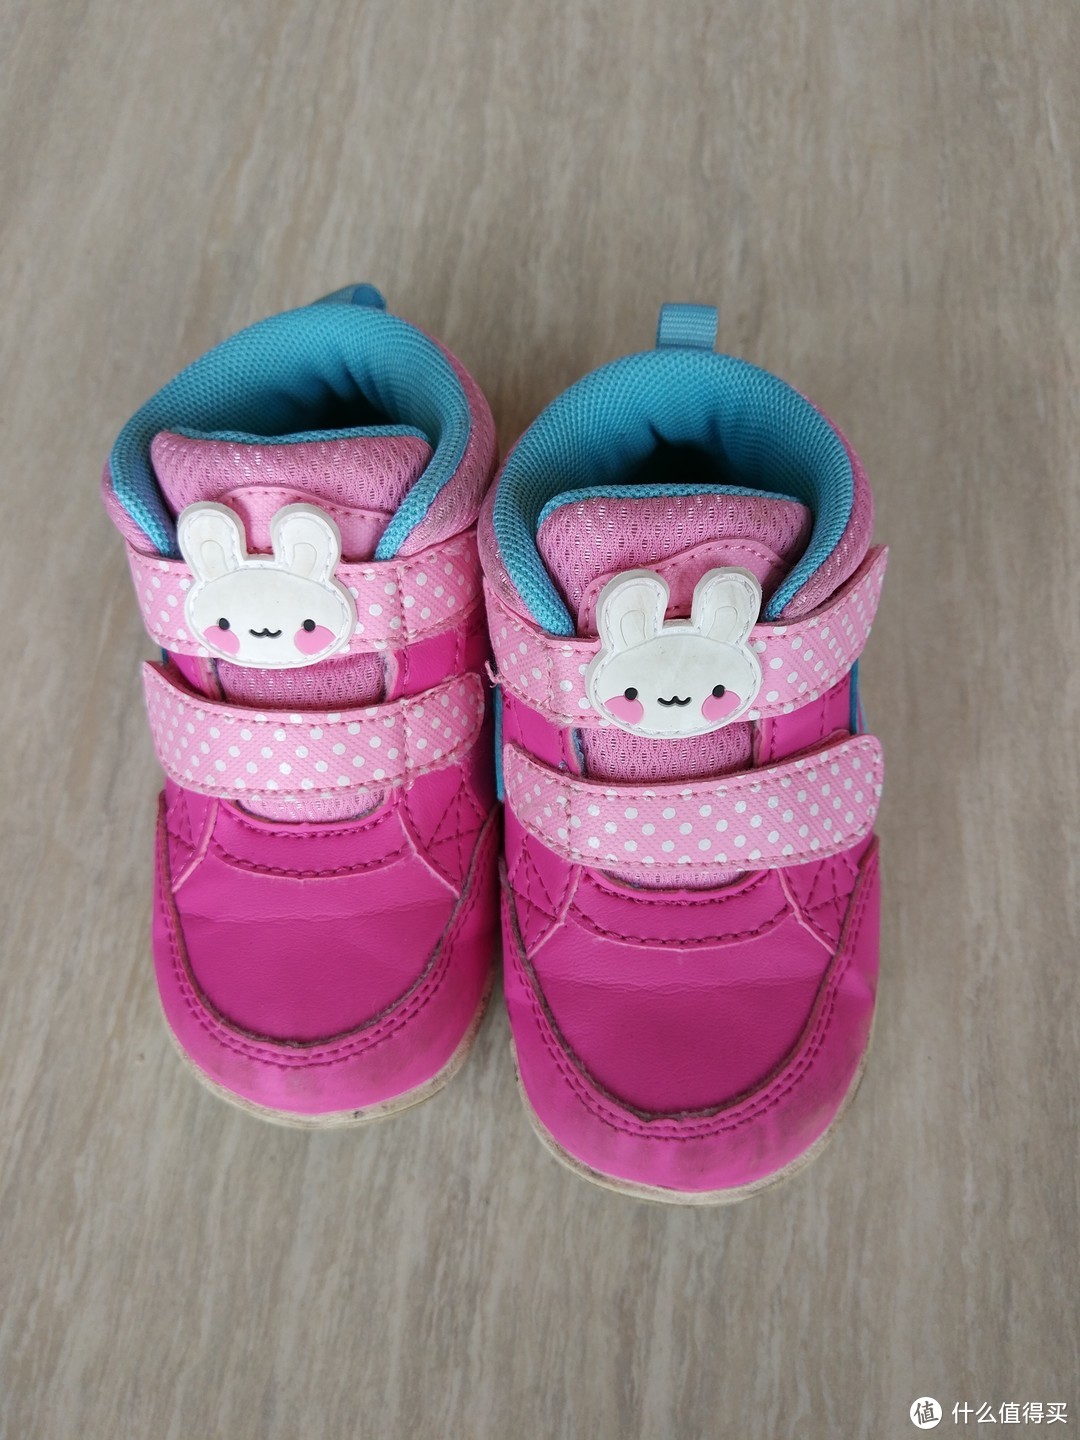 季度小结—宝宝最爱的故事型绘本和常穿的鞋